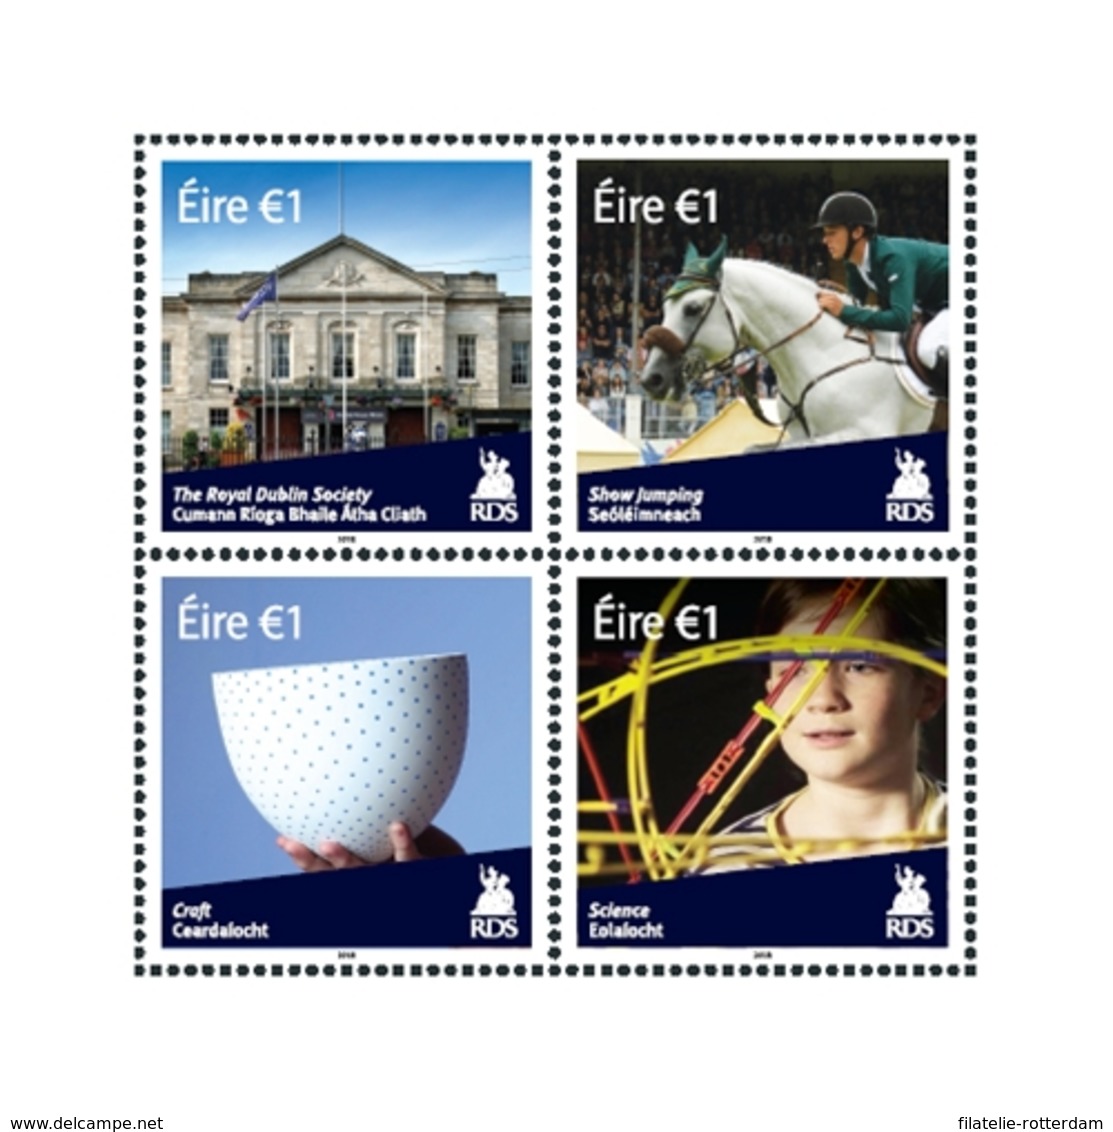 Ierland / Ireland - Postfris/MNH - Complete Set Royal Dublin Society 2018 - Ongebruikt